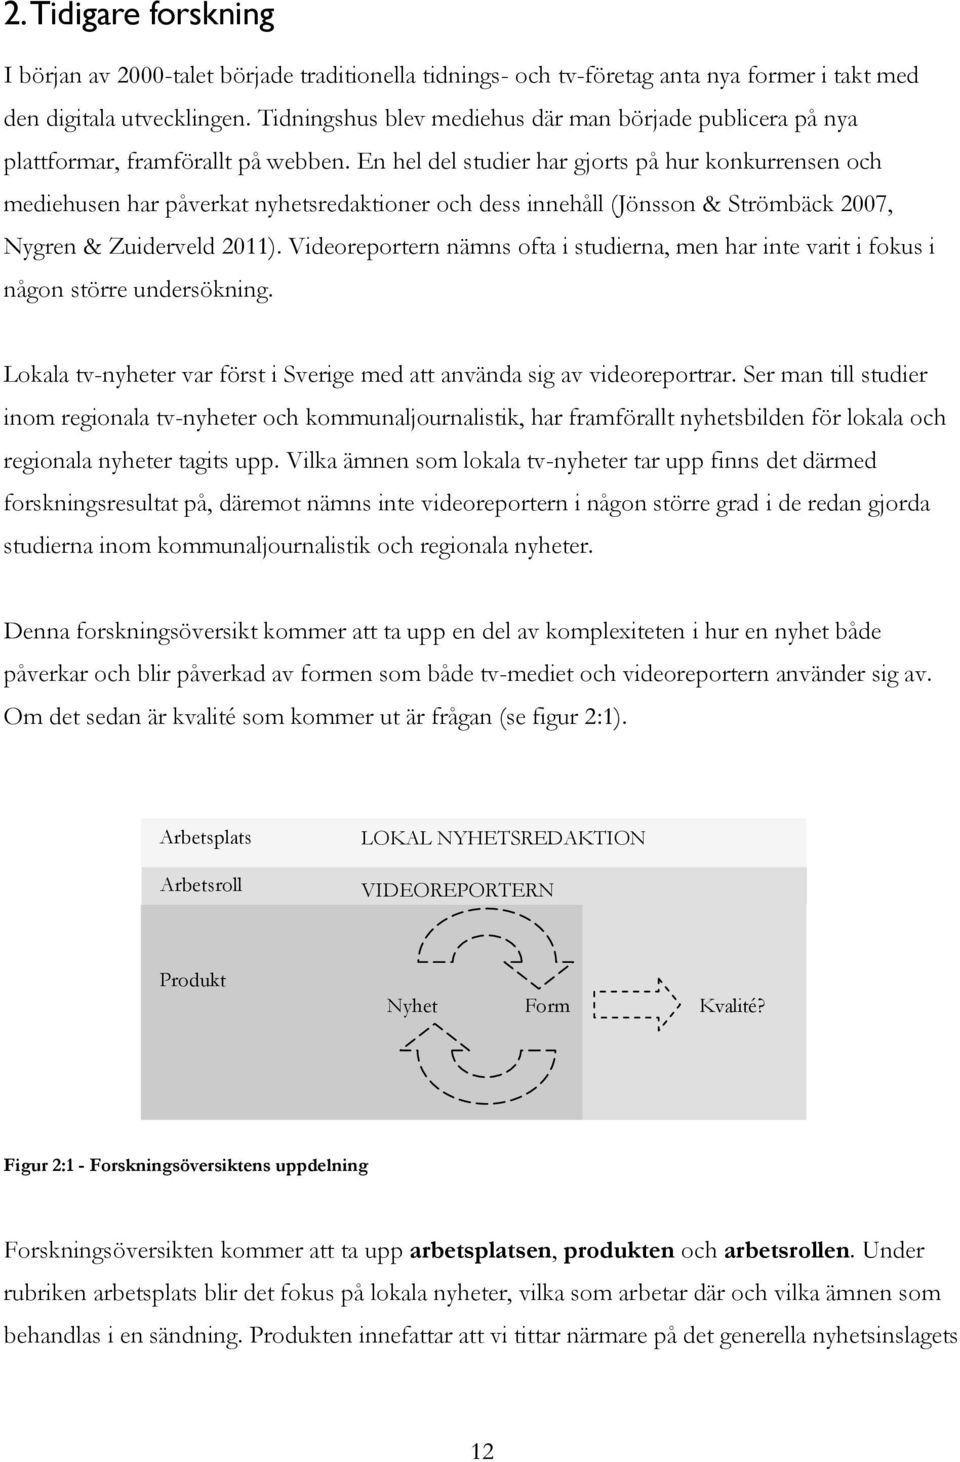 En hel del studier har gjorts på hur konkurrensen och mediehusen har påverkat nyhetsredaktioner och dess innehåll (Jönsson & Strömbäck 2007, Nygren & Zuiderveld 2011).